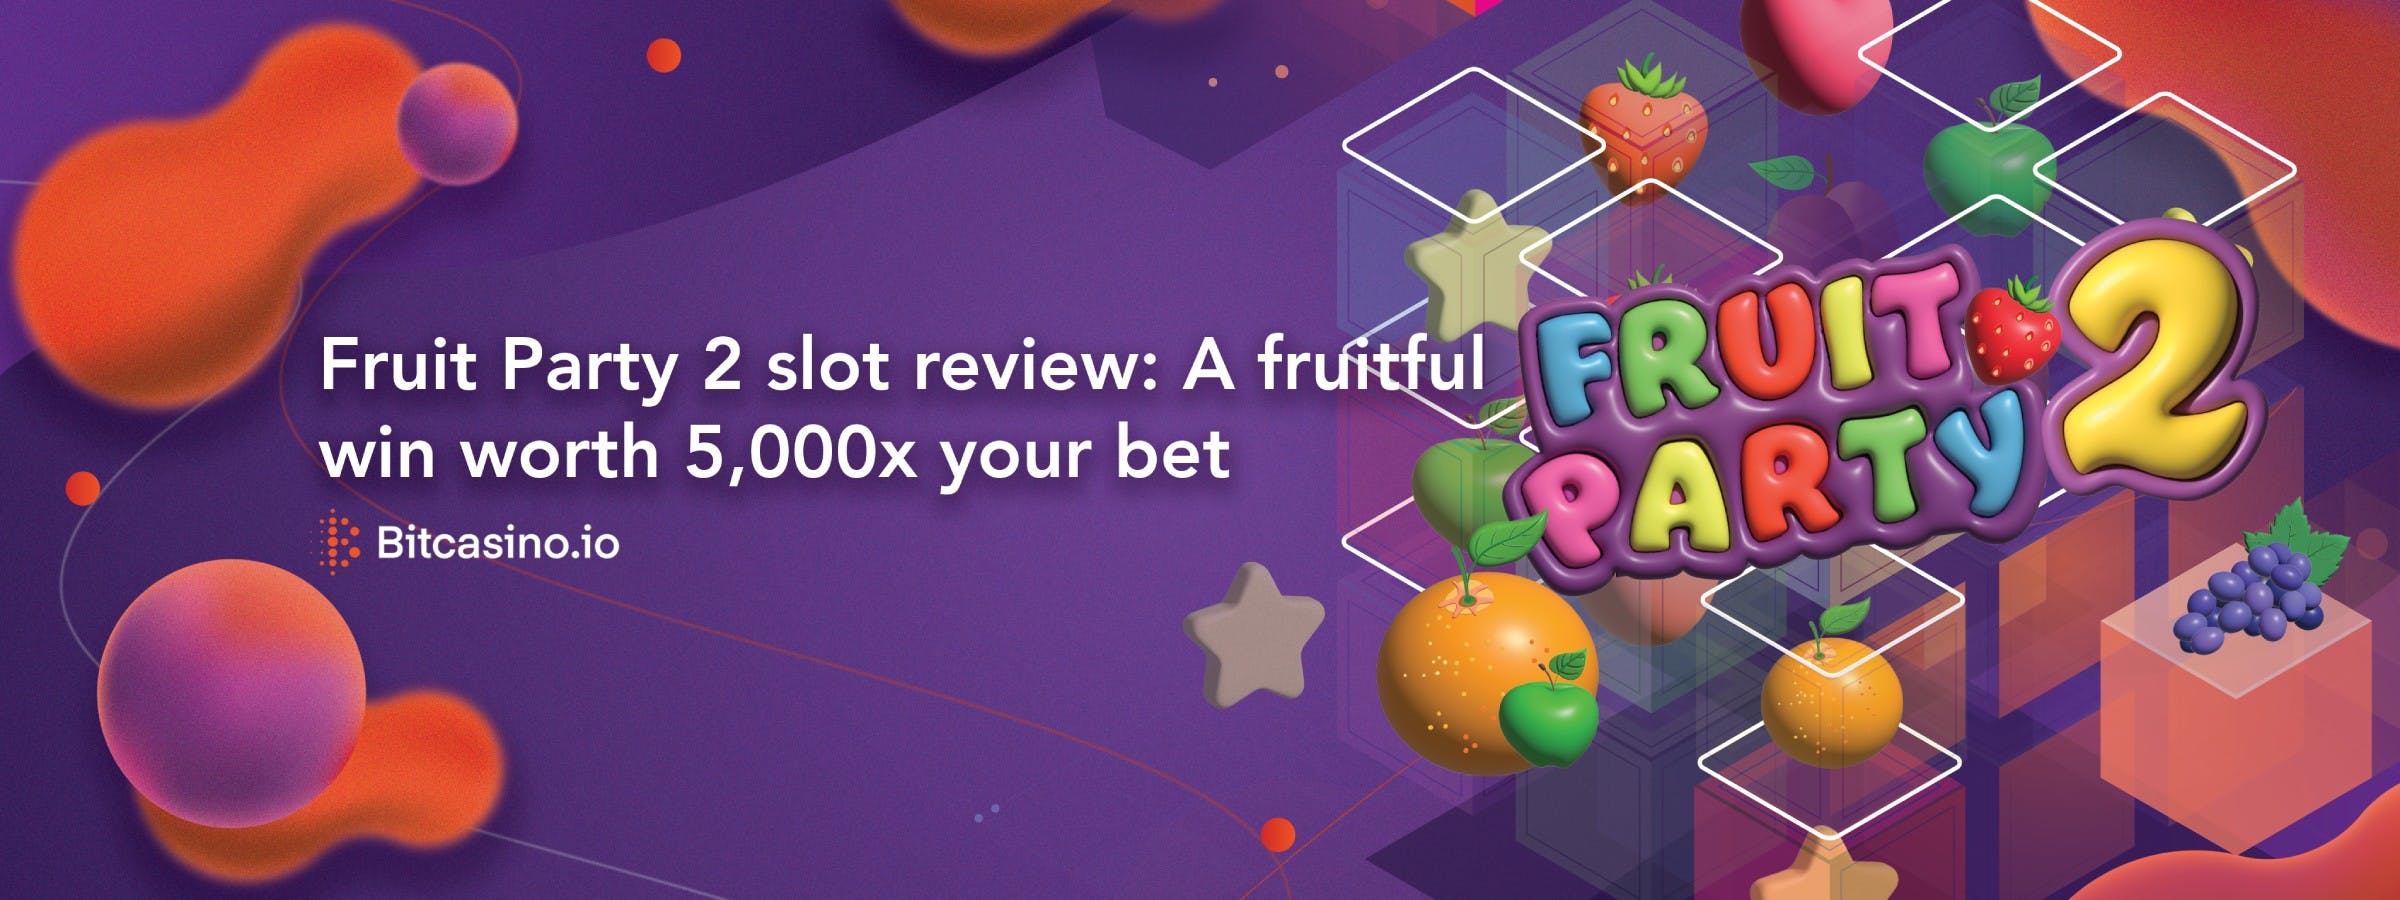 Fruit Party 2 – Slot-Bewertung: Ein ertragreicher Gewinn im Wert des 5.000-fachen deines Einsatzes